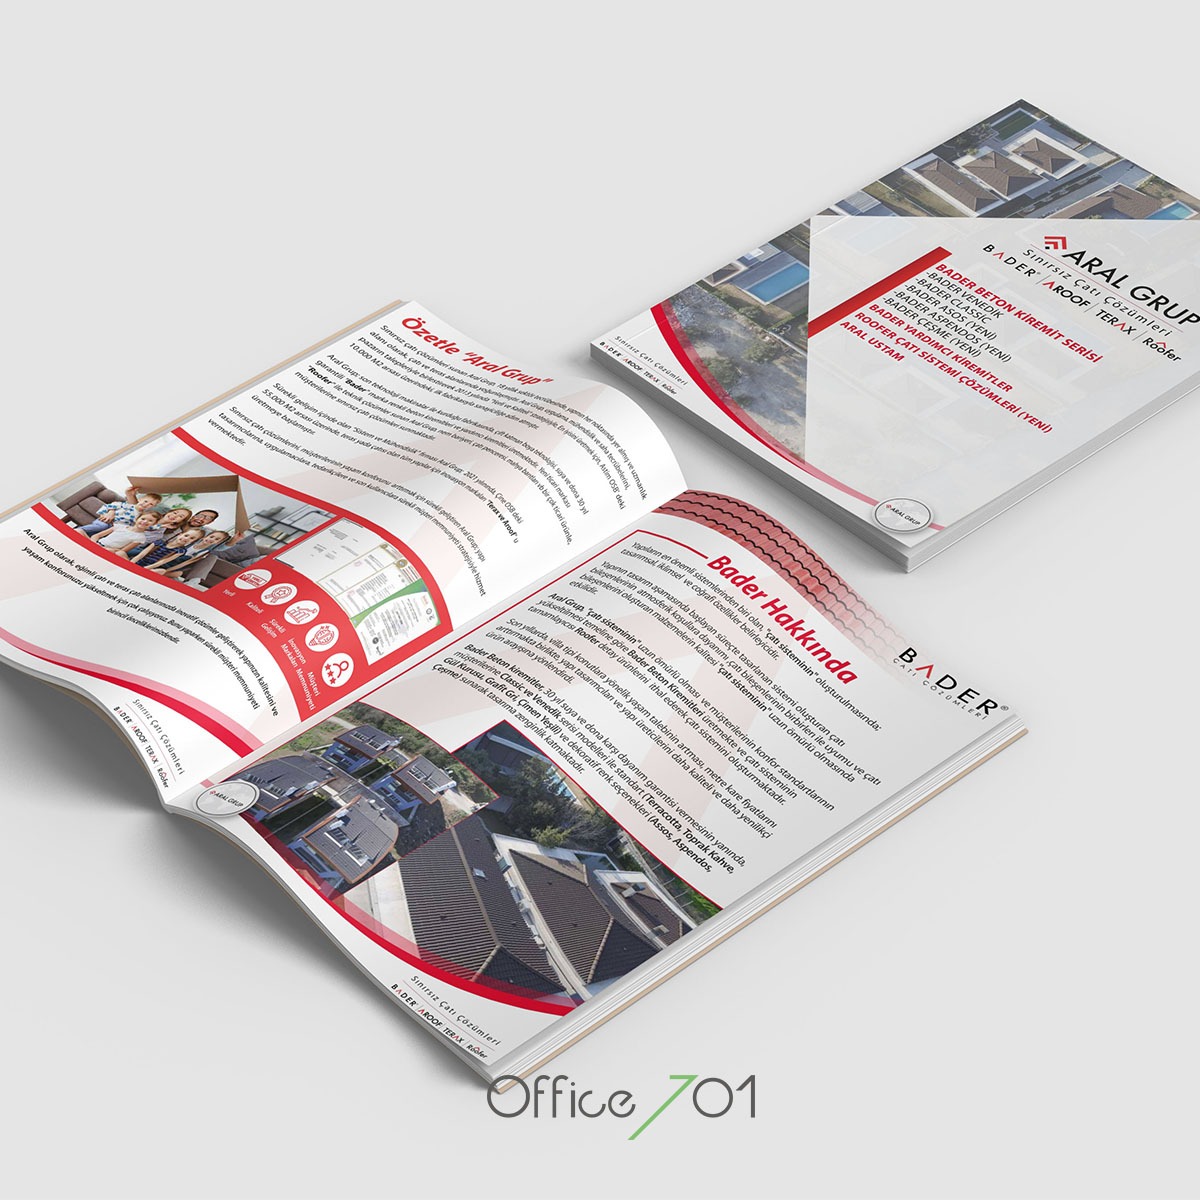 Office701 | Aral Grup Katalog Tasarımı